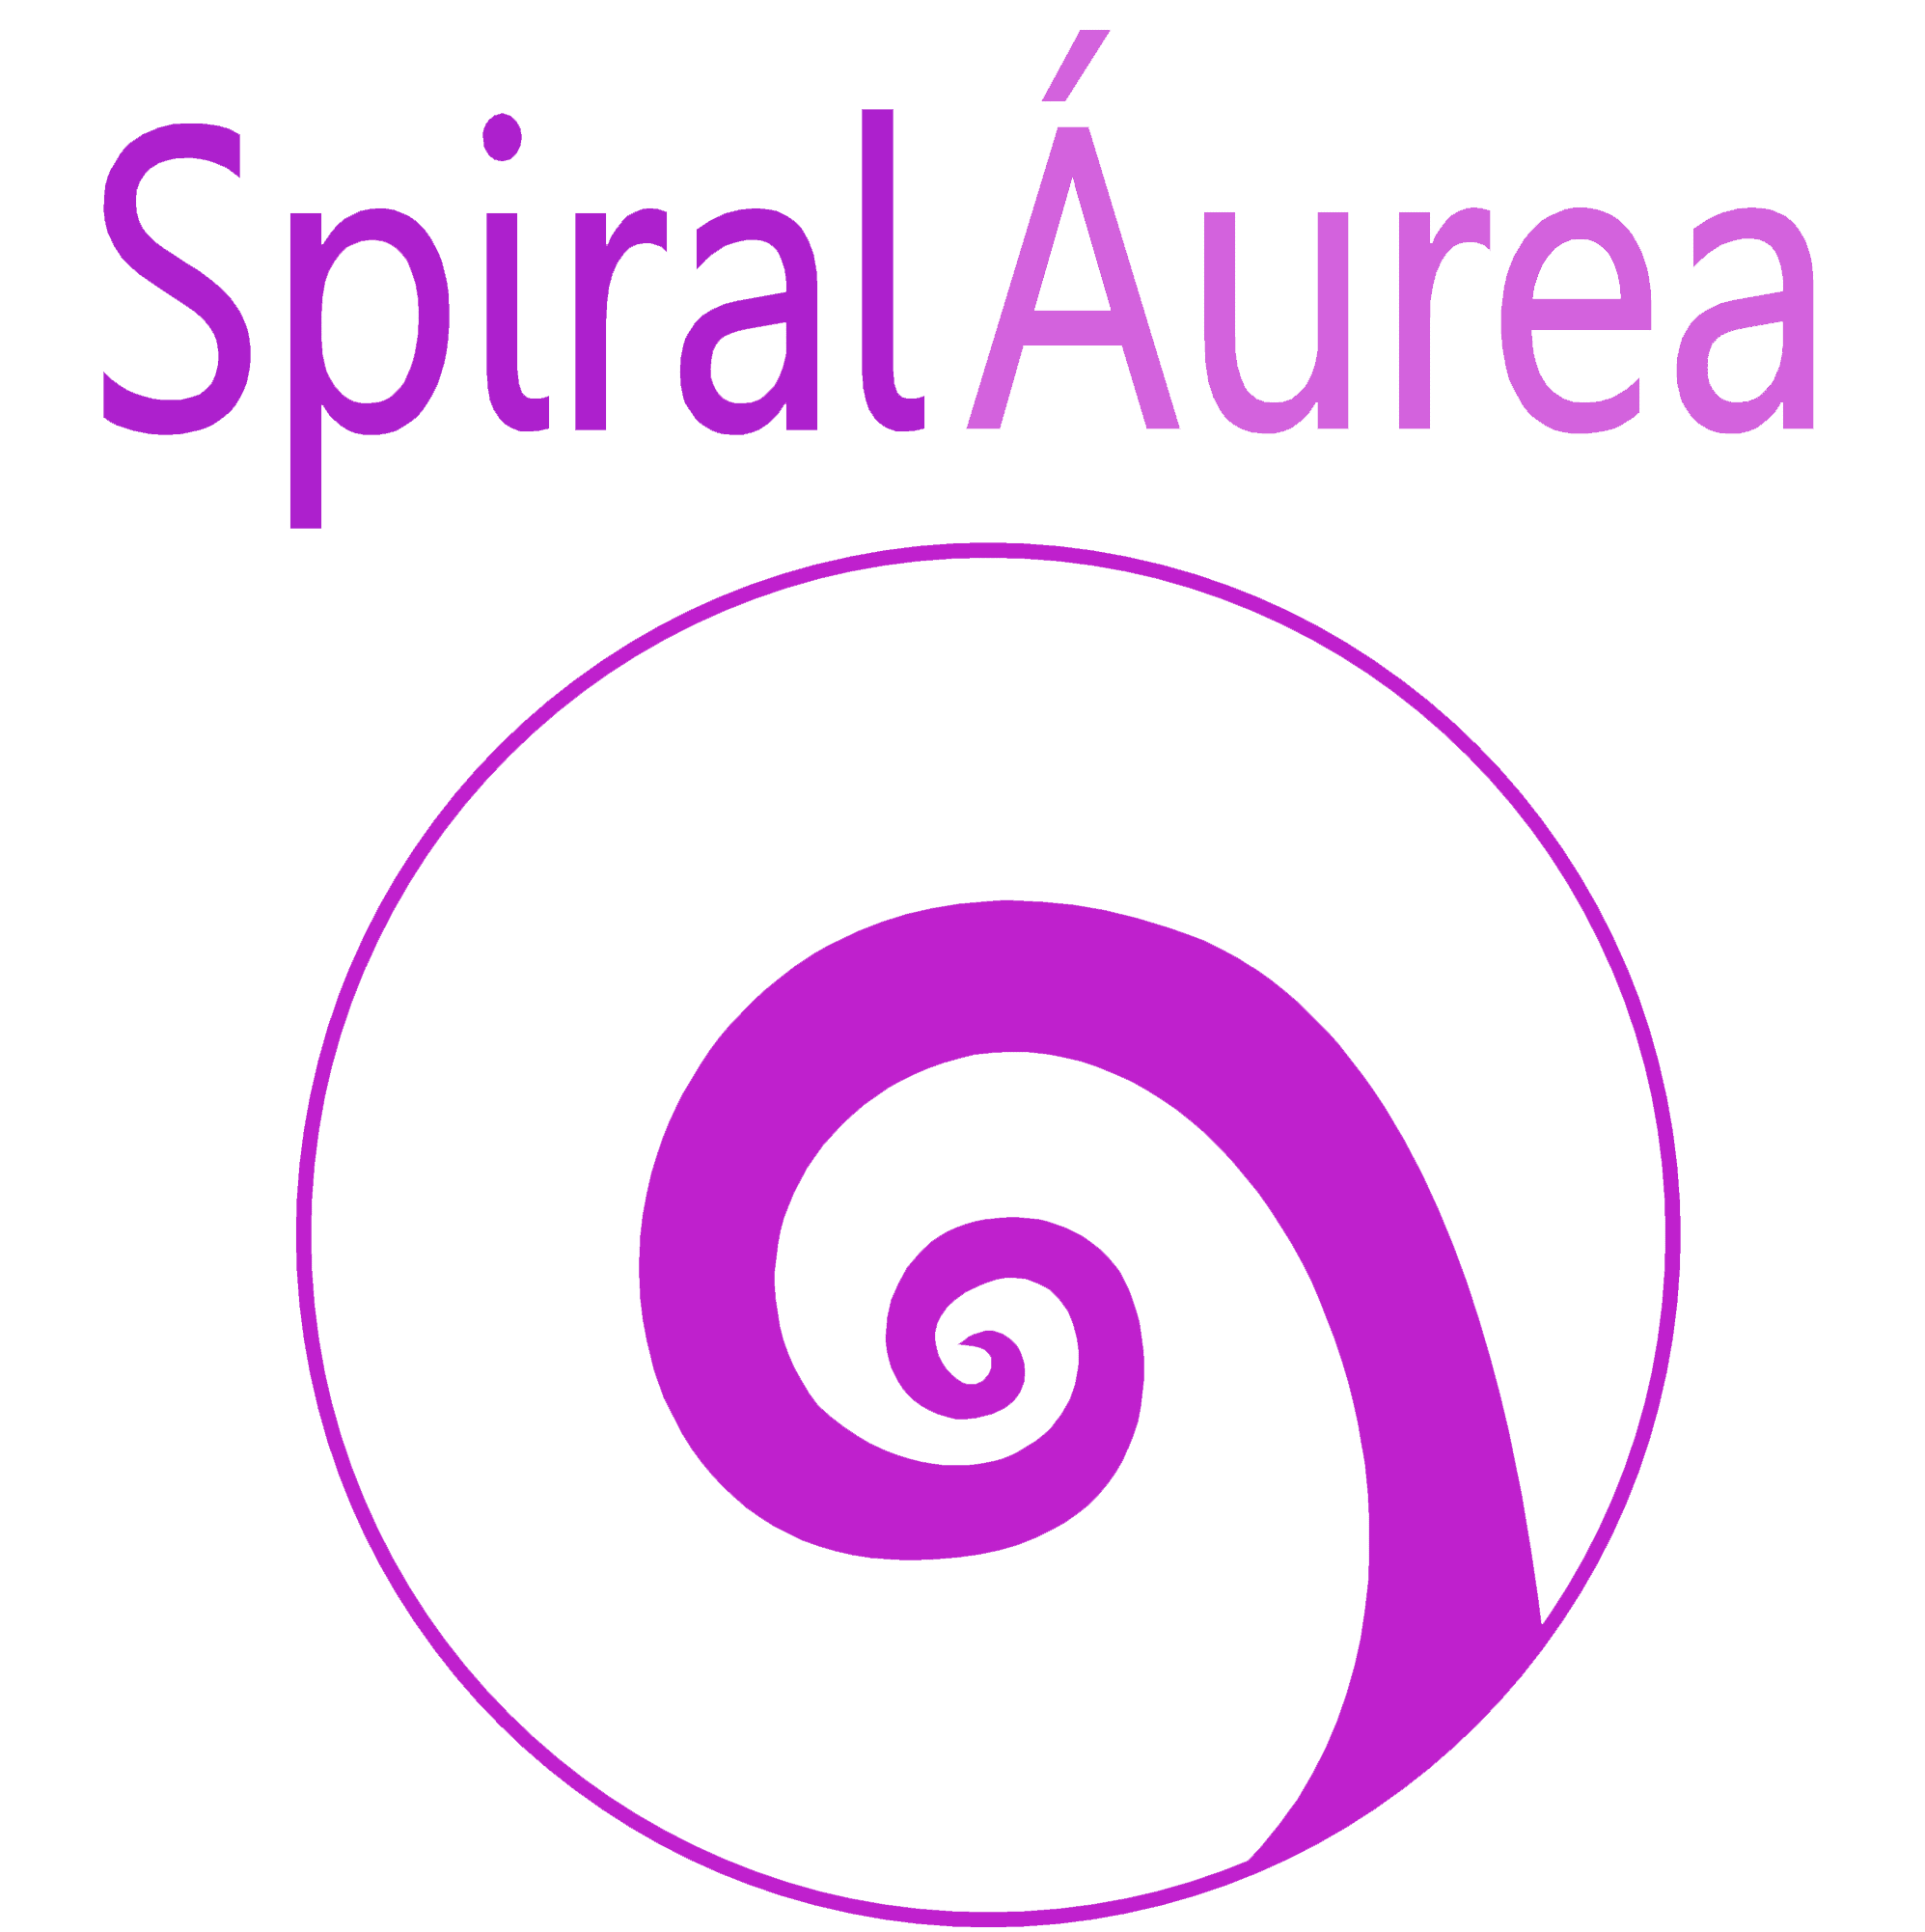 Spiral Aurea